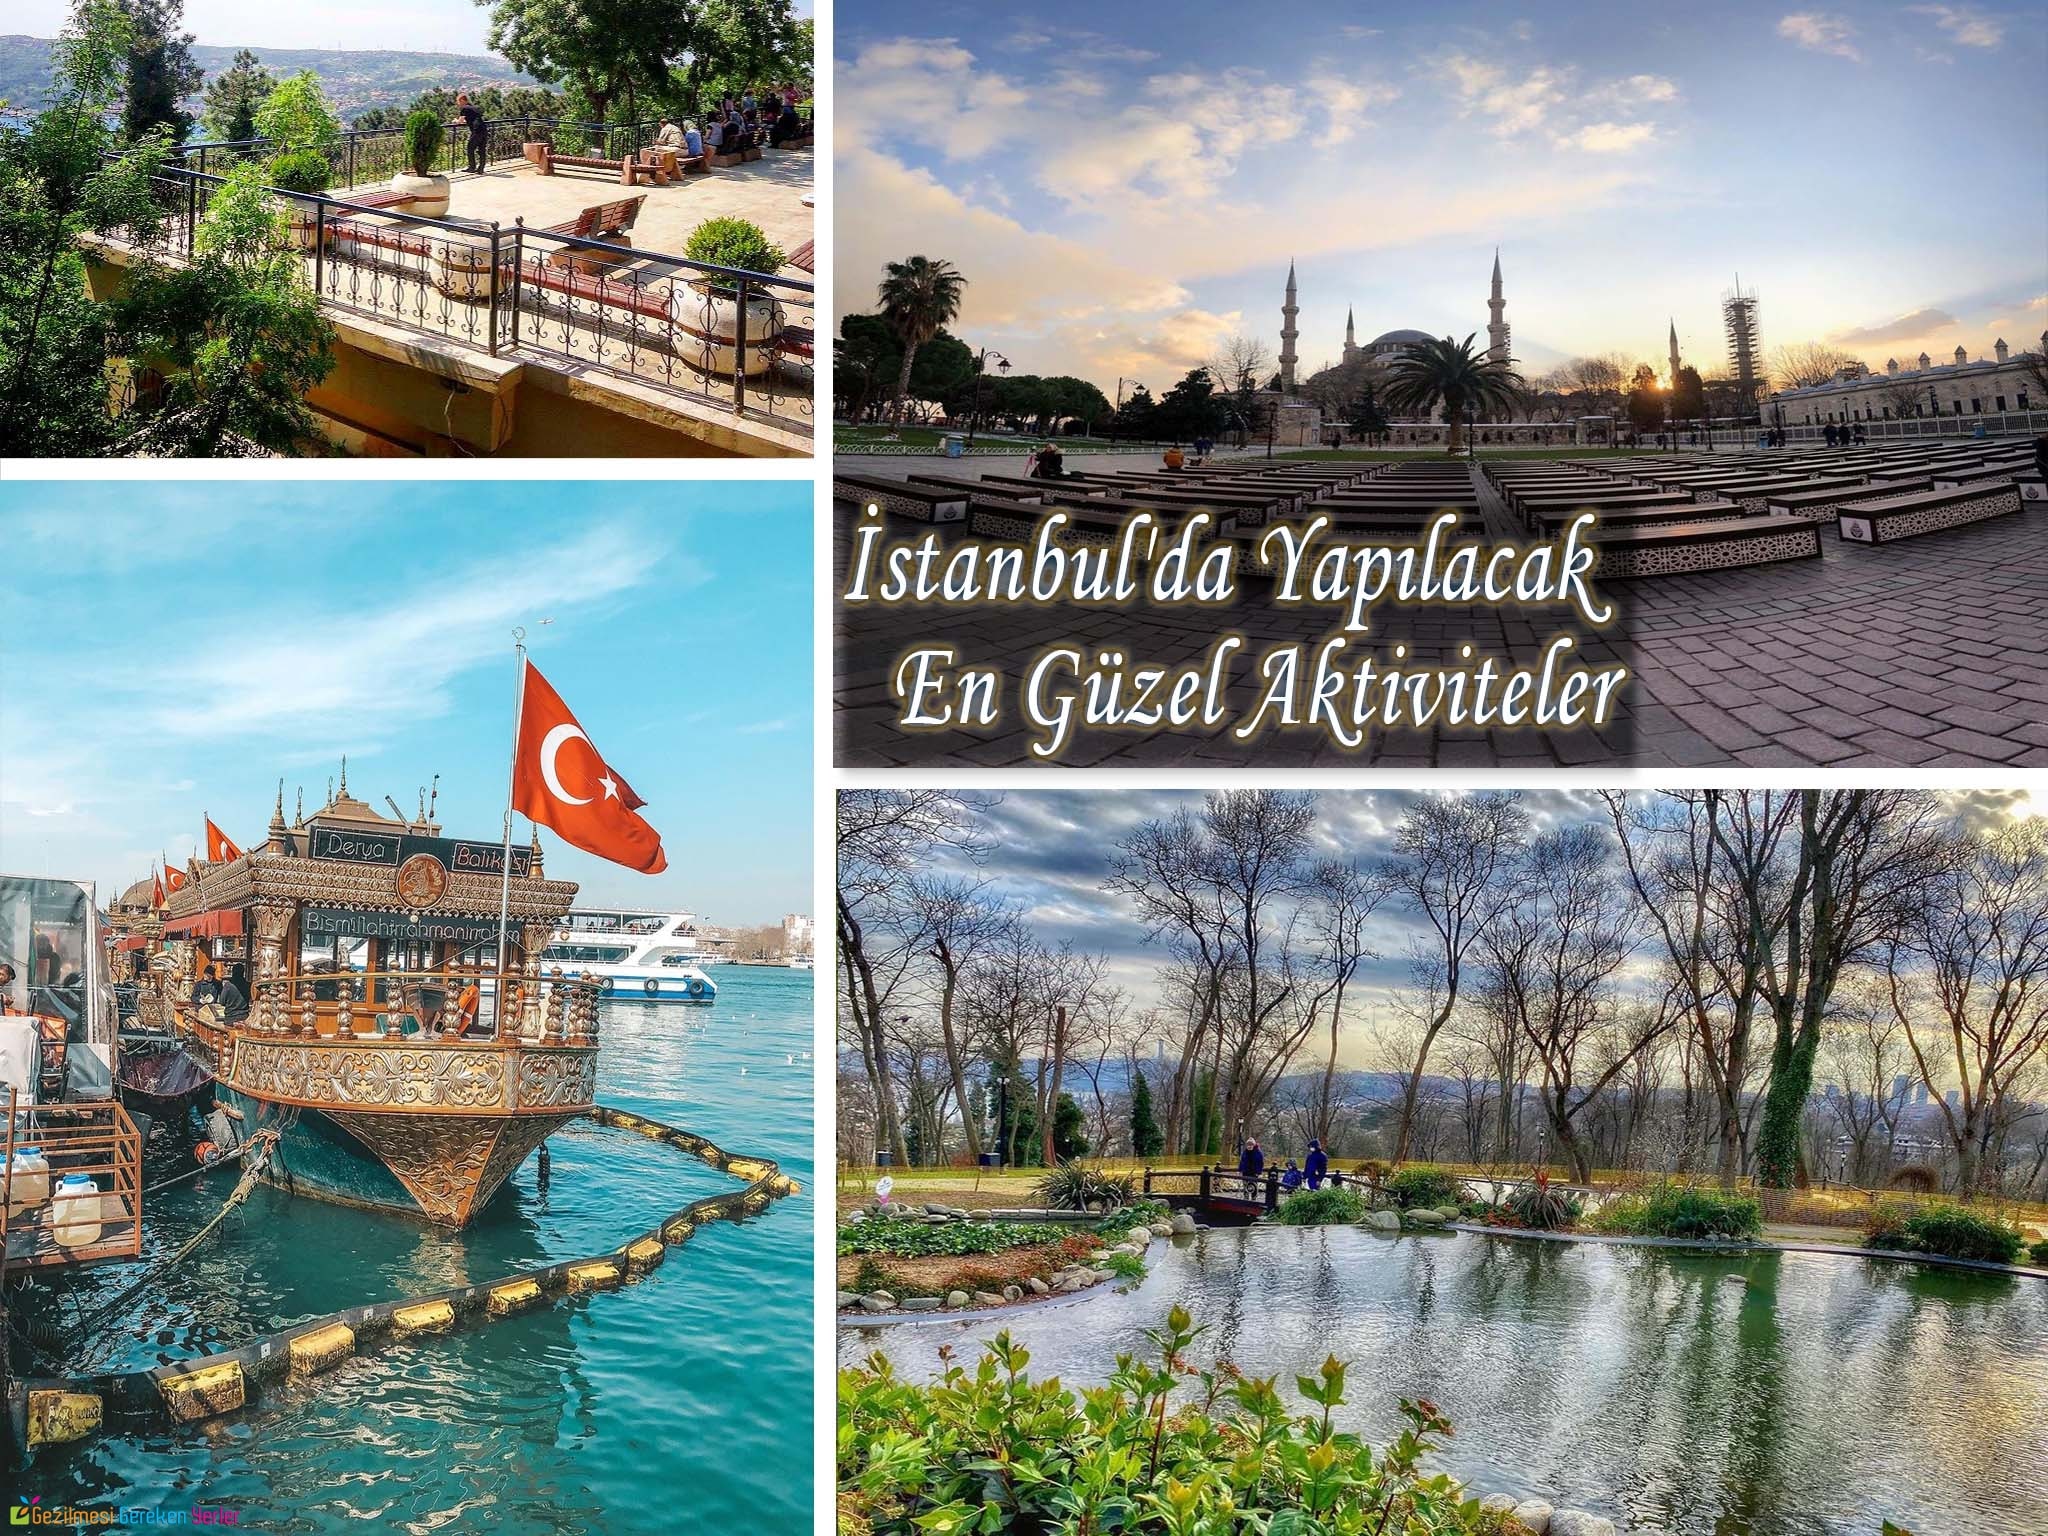 istanbul da yapilacak en guzel aktiviteler gormeniz gereken 25 yer